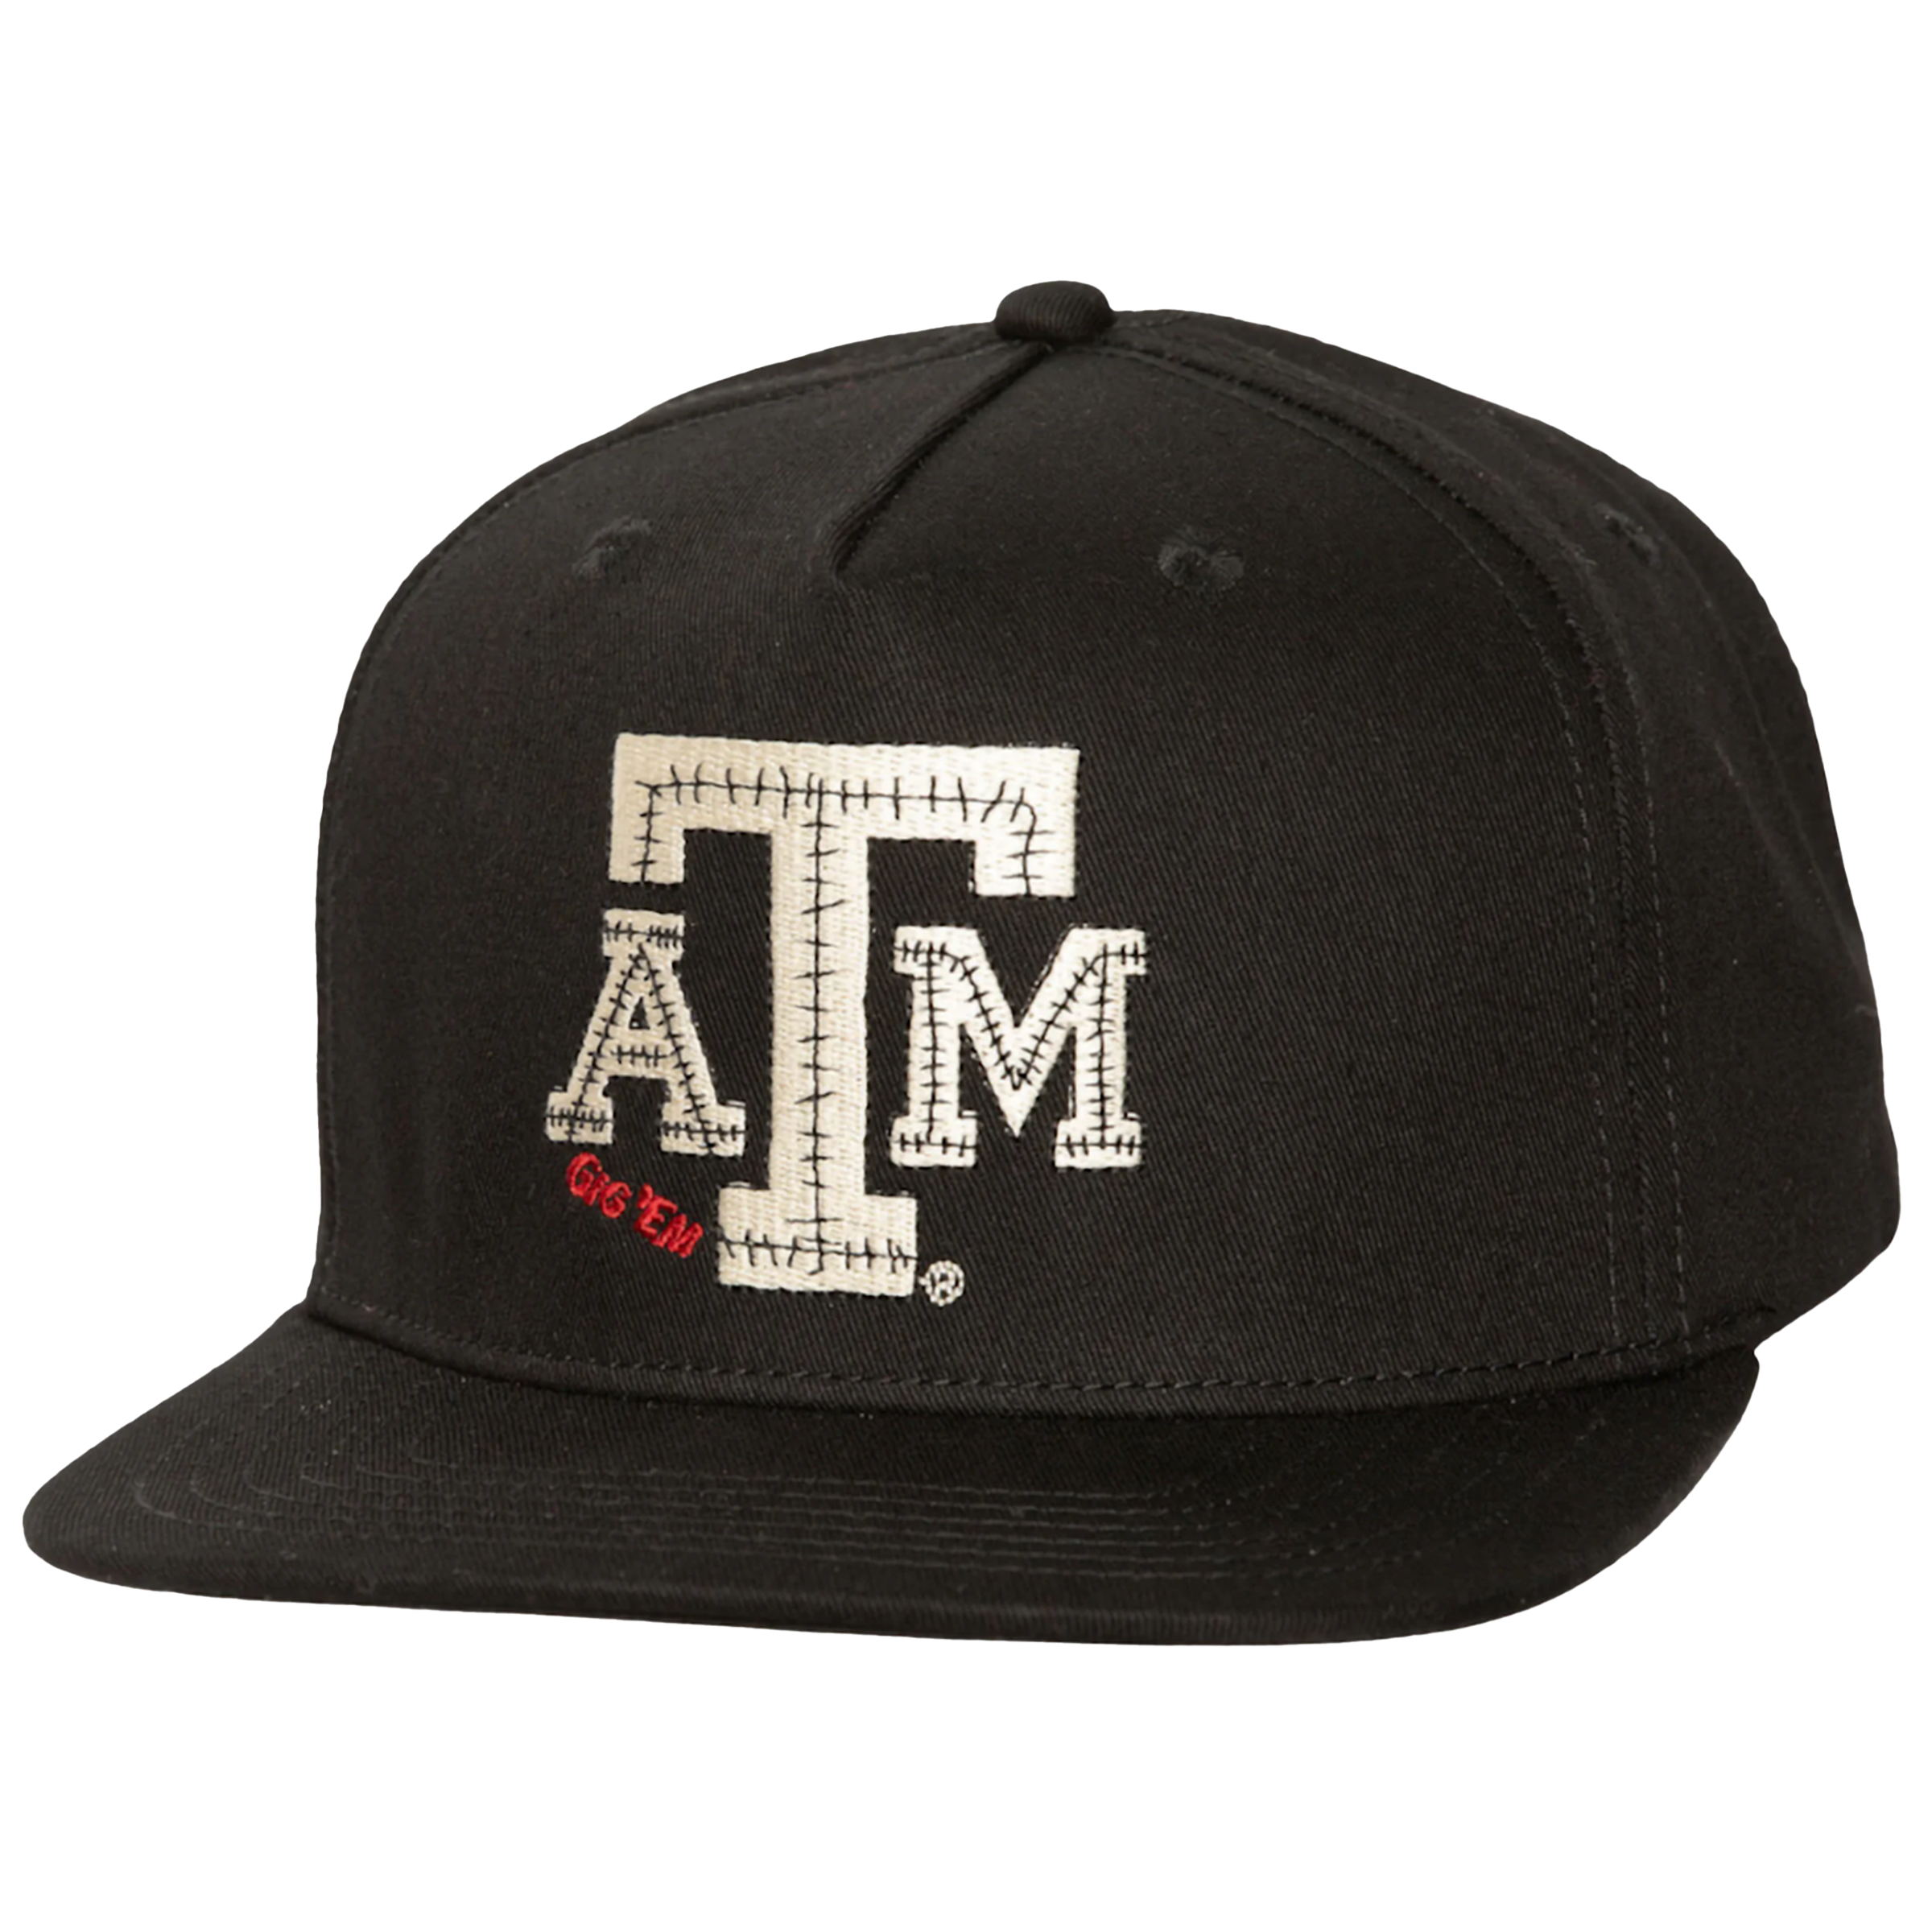 Travis Scott x Mitchell & Ness "Texas A&M Aggies" Snapback Hat